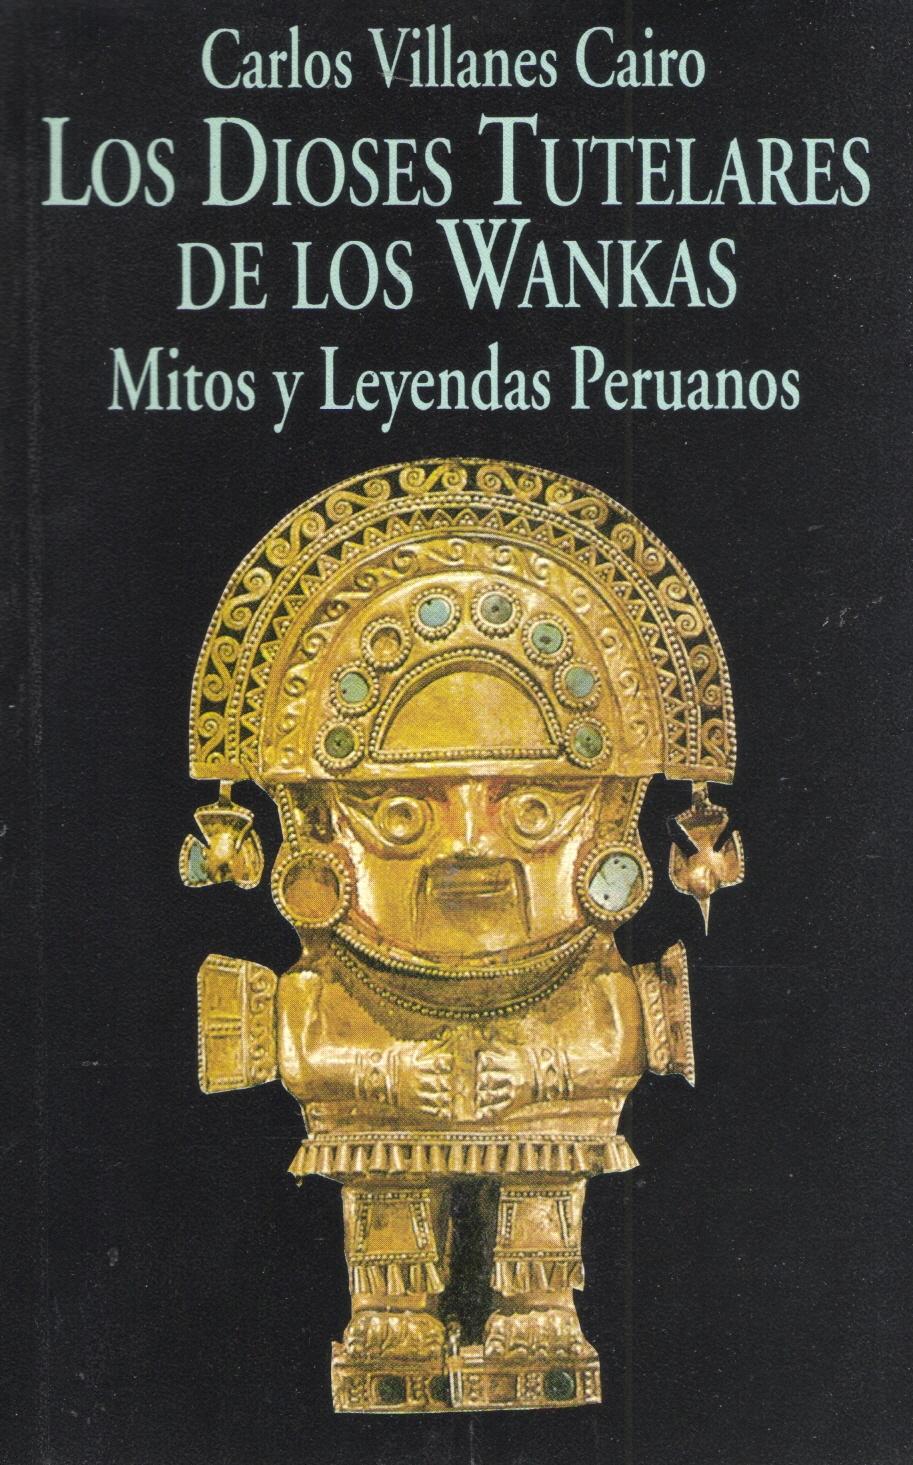 Los Dioses Tutelares de los Wankas "Mitos y leyendas peruanos"